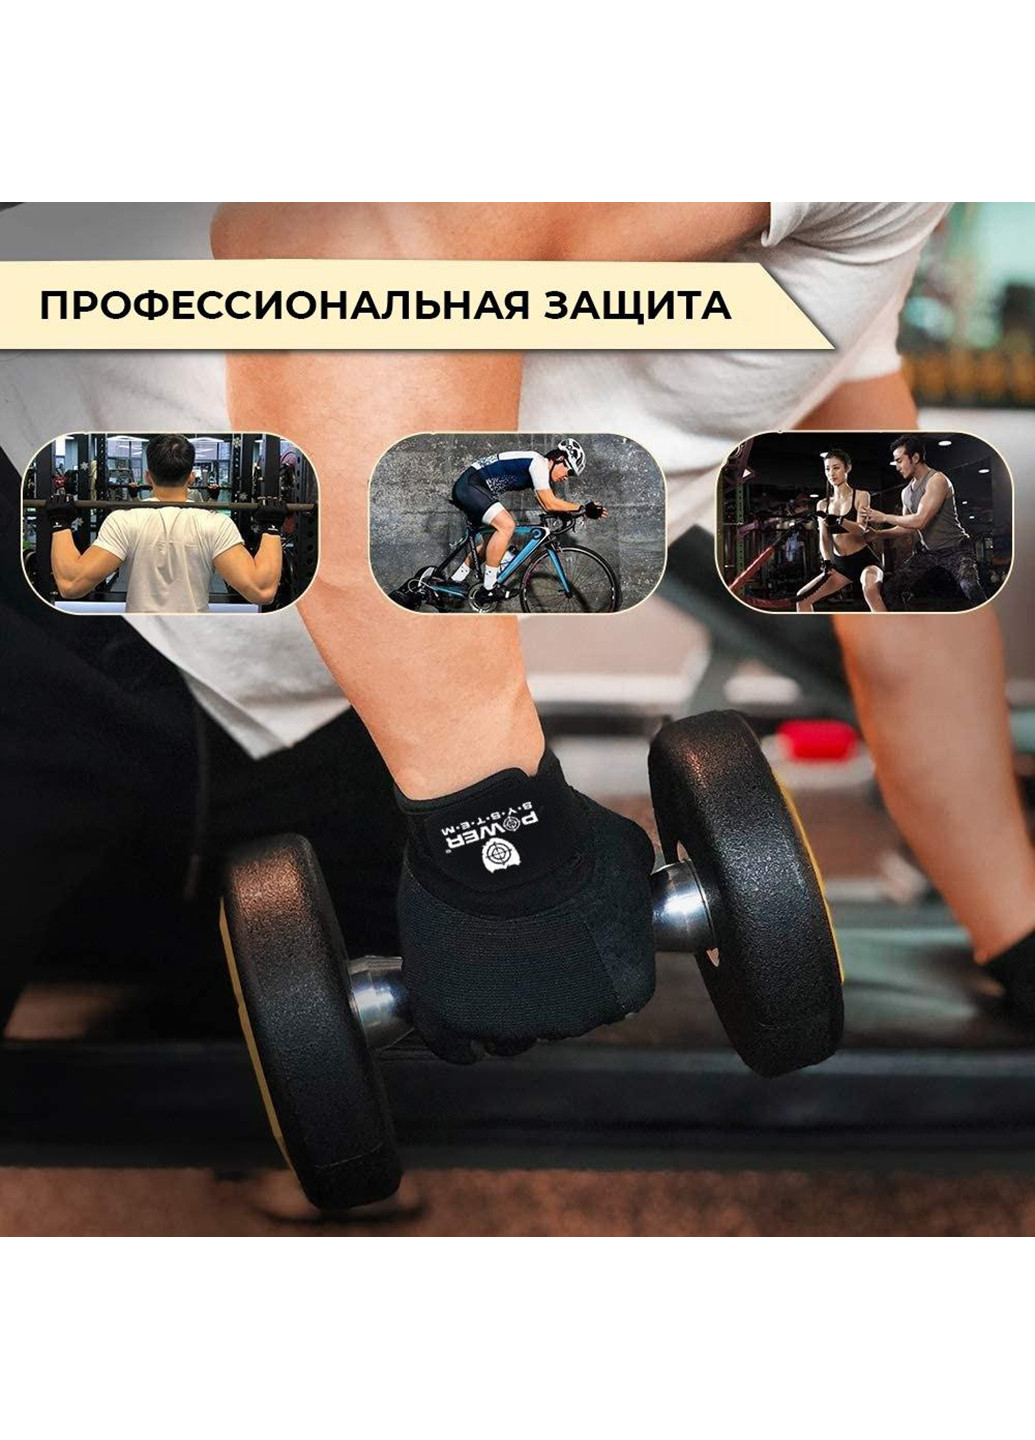 Перчатки для фитнеса и тяжелой атлетики XS Power System (231538405)